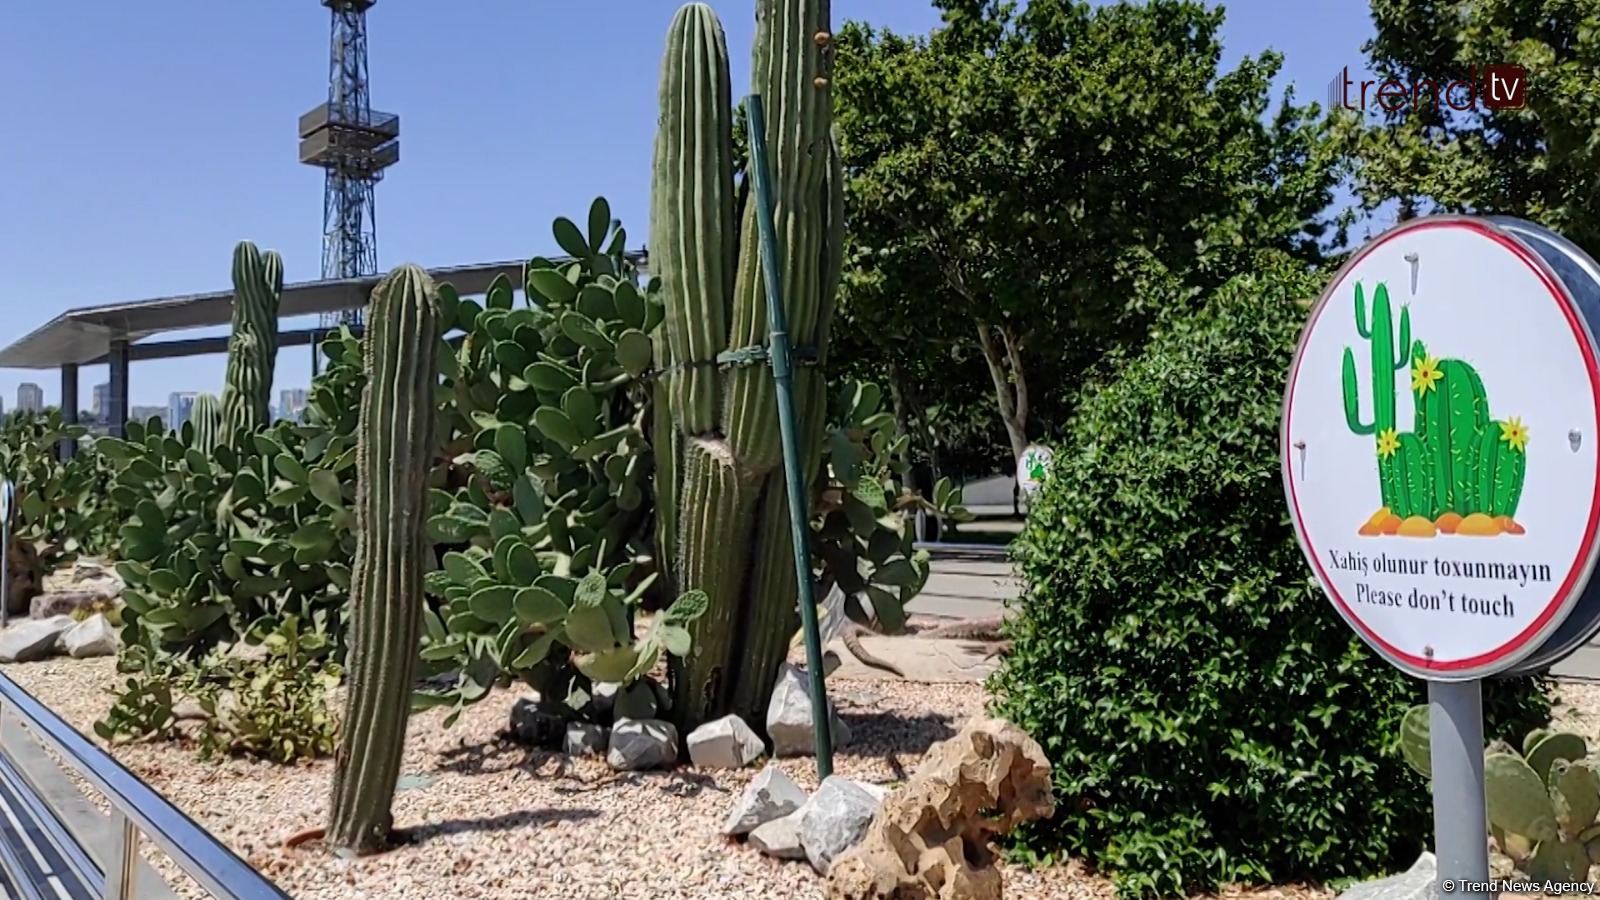 Paytaxt sakinləri bulvarda kaktuslara zərər vurulmasına kəskin etiraz edir (VİDEOREPORTAJ)